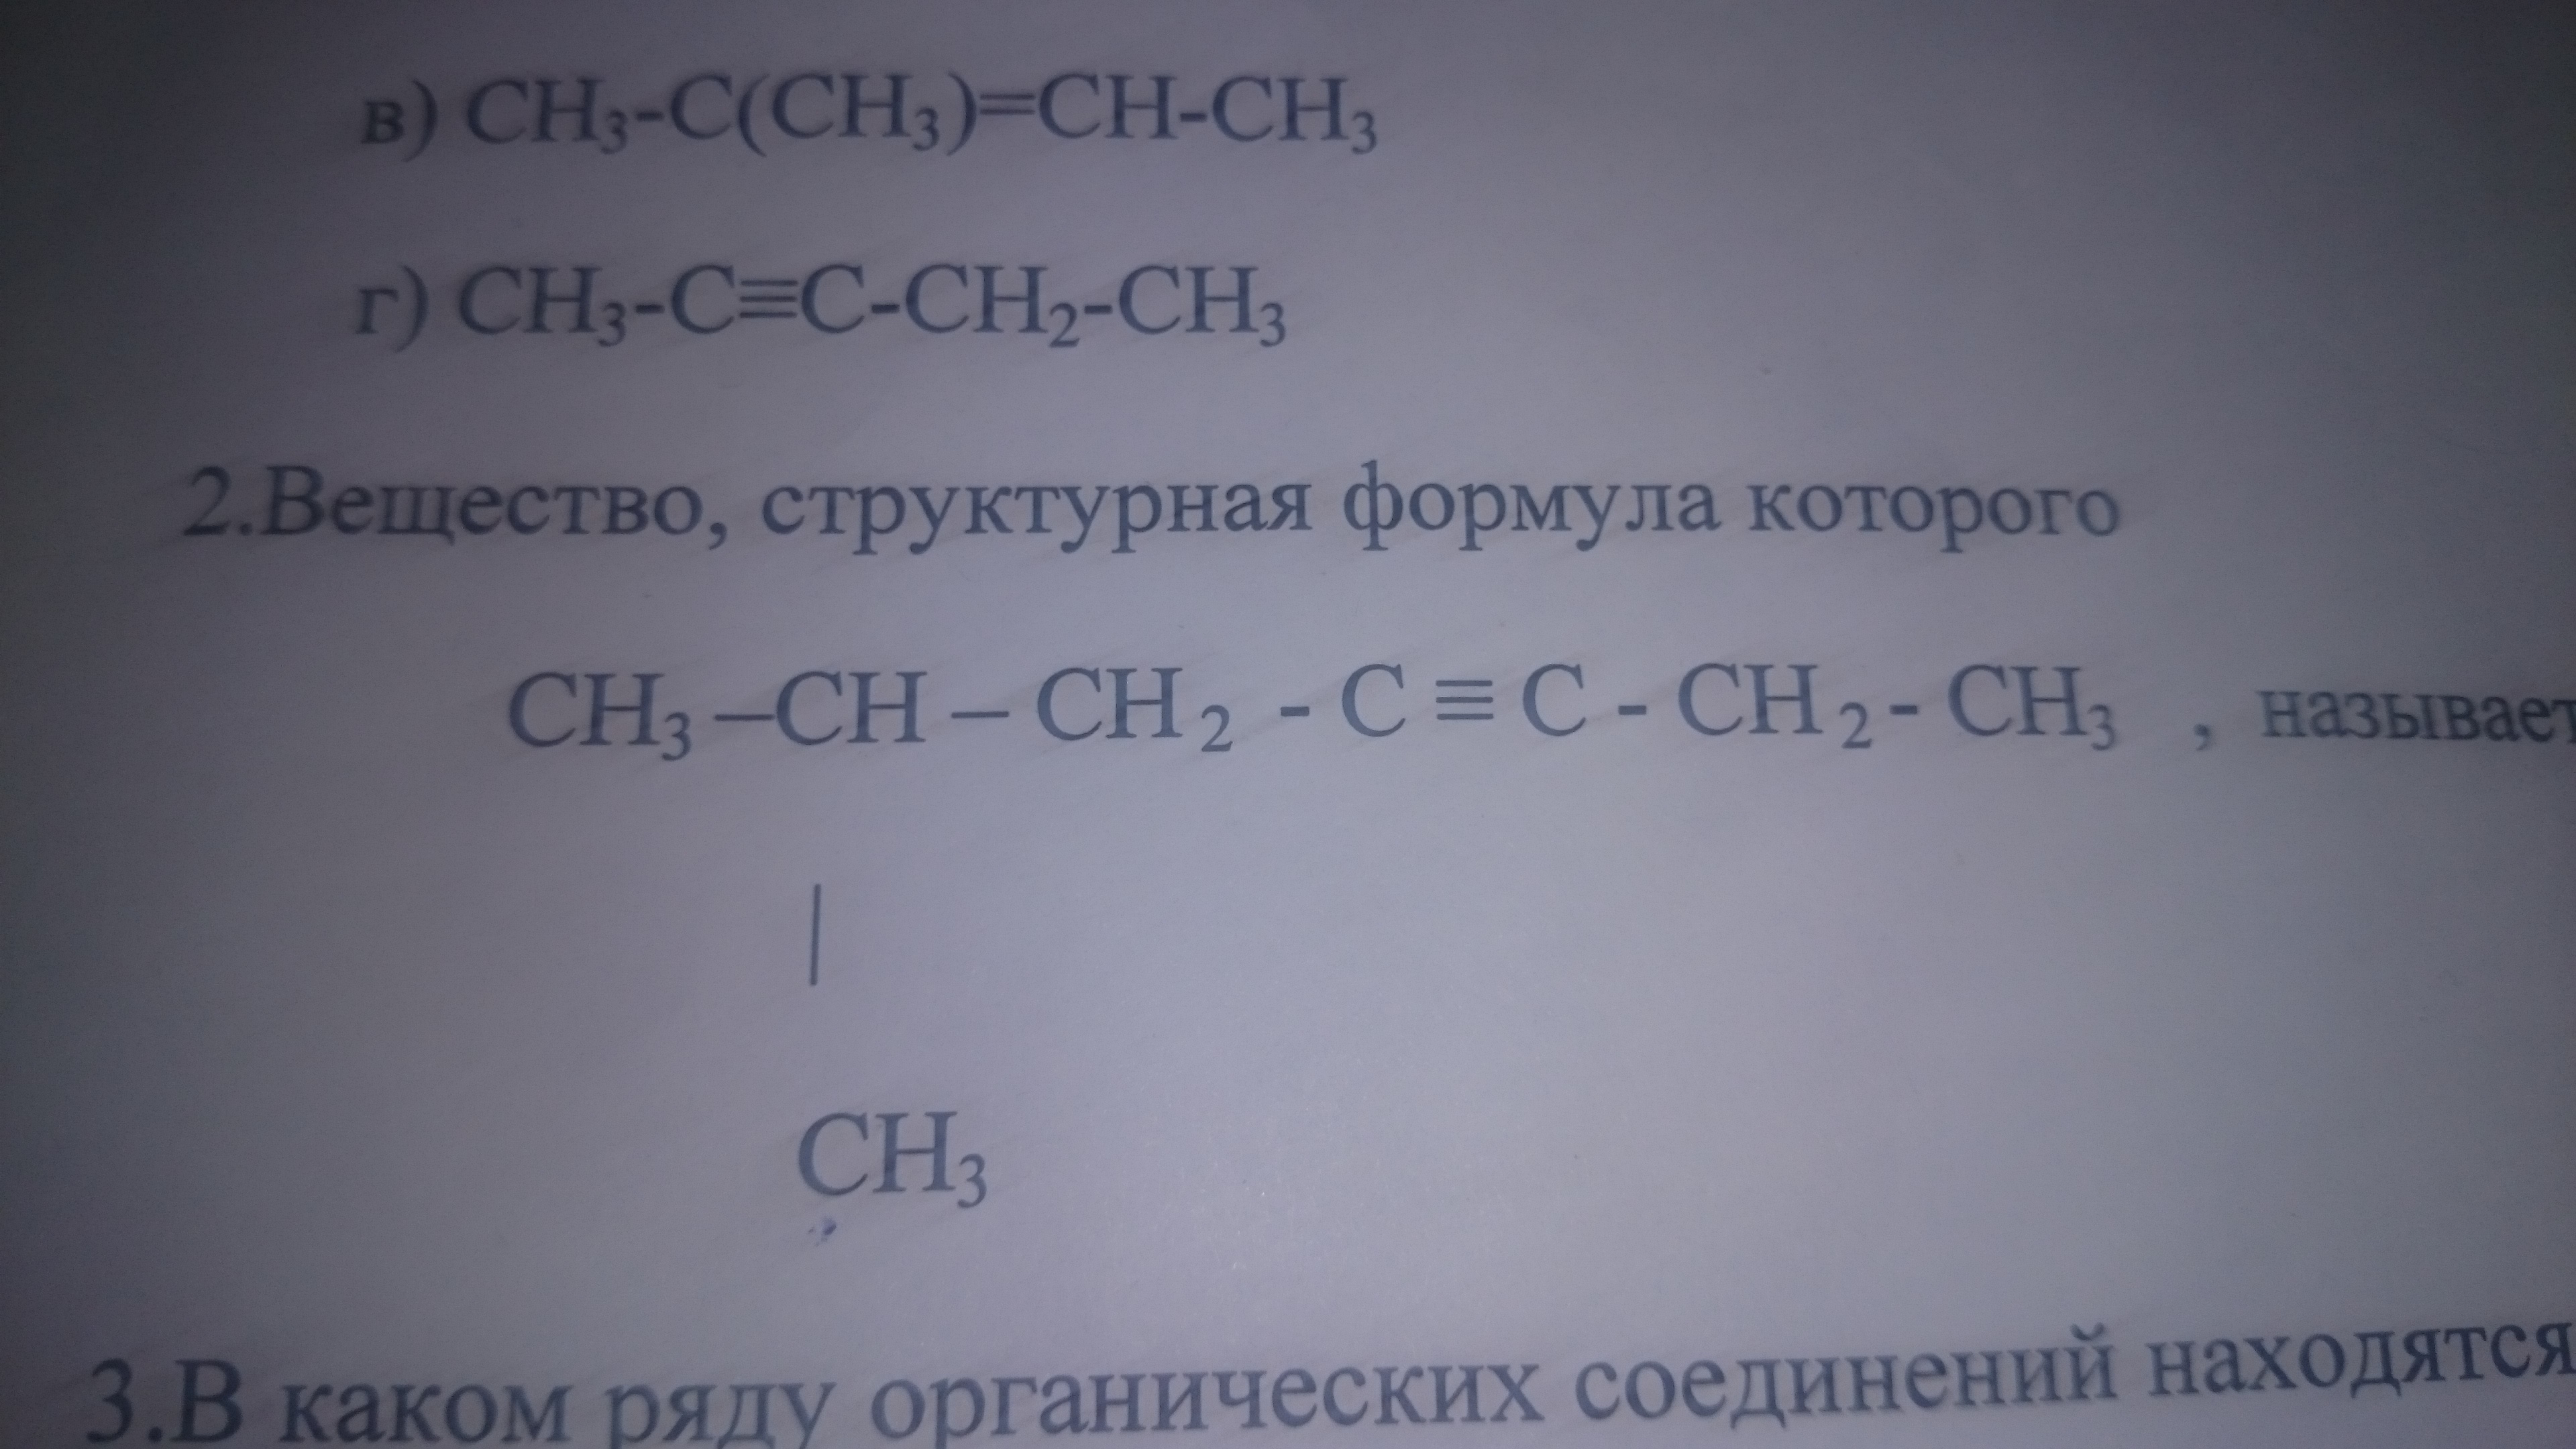 Назвать вещества k2s. Caf2 название вещества. Назовите вещества. Cac2 название вещества. Назовите вещества формулы которых вариант 4.